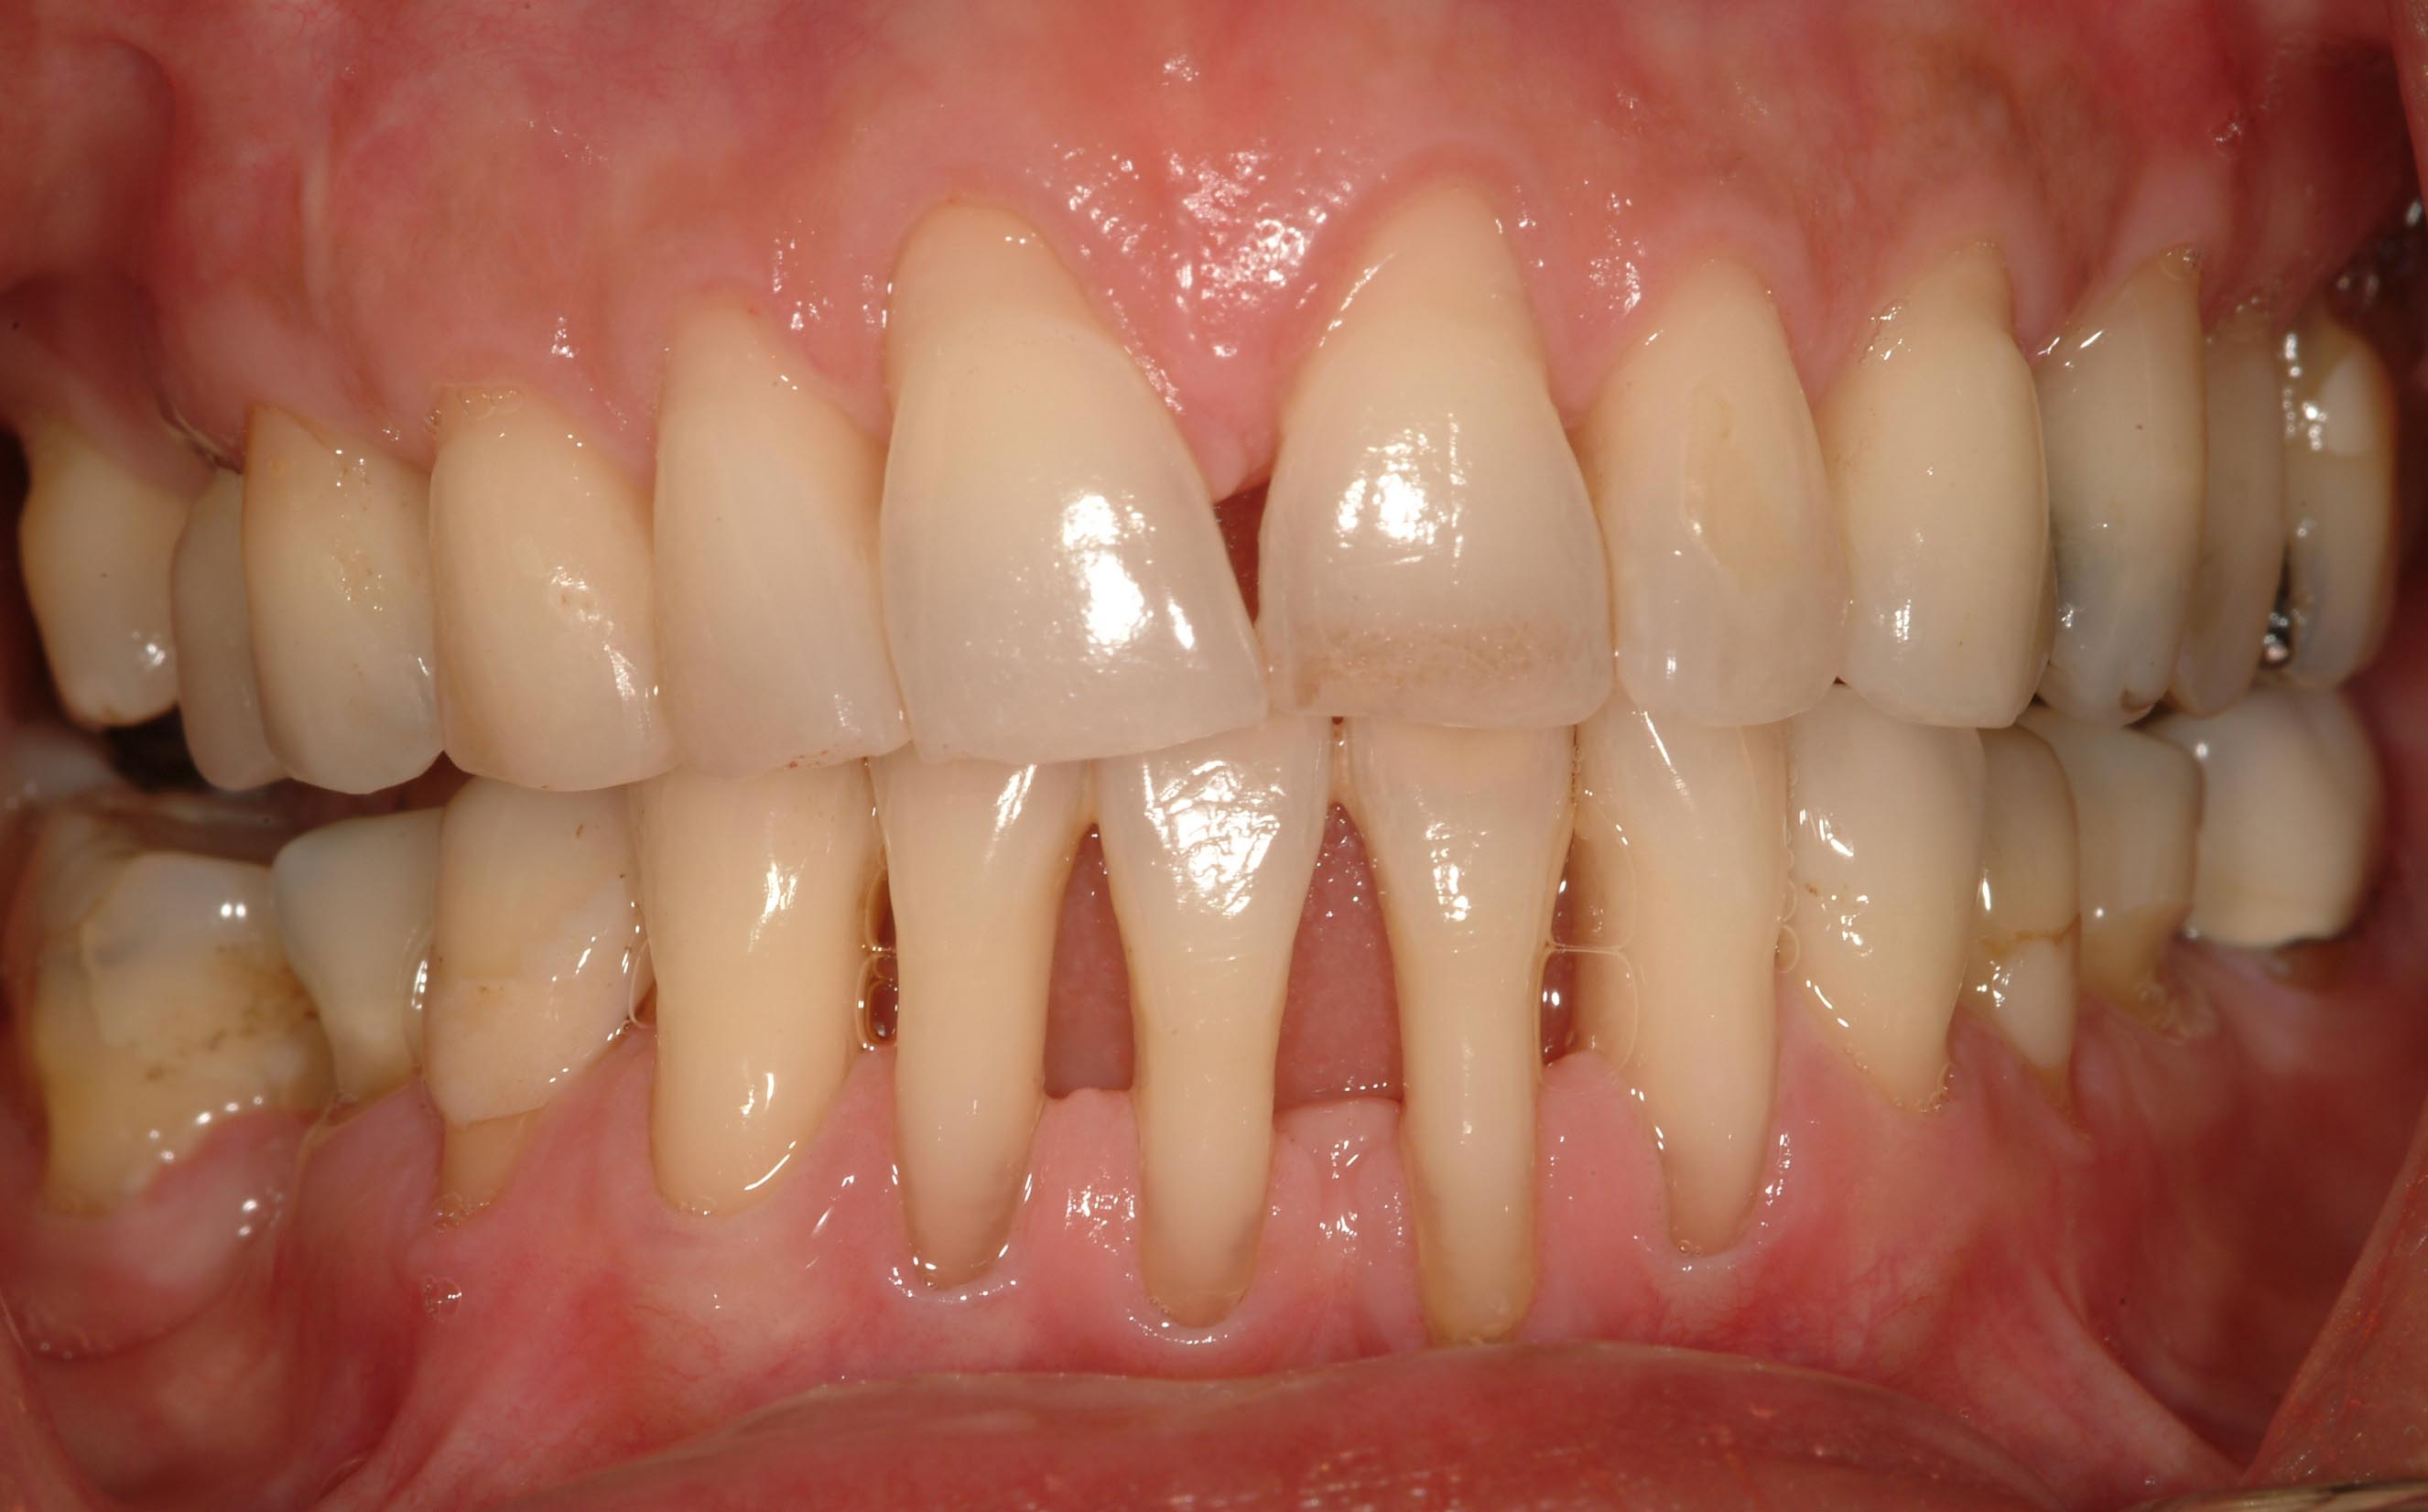 Periodontal (Gum) Disease | Institute of Dental Implants ...